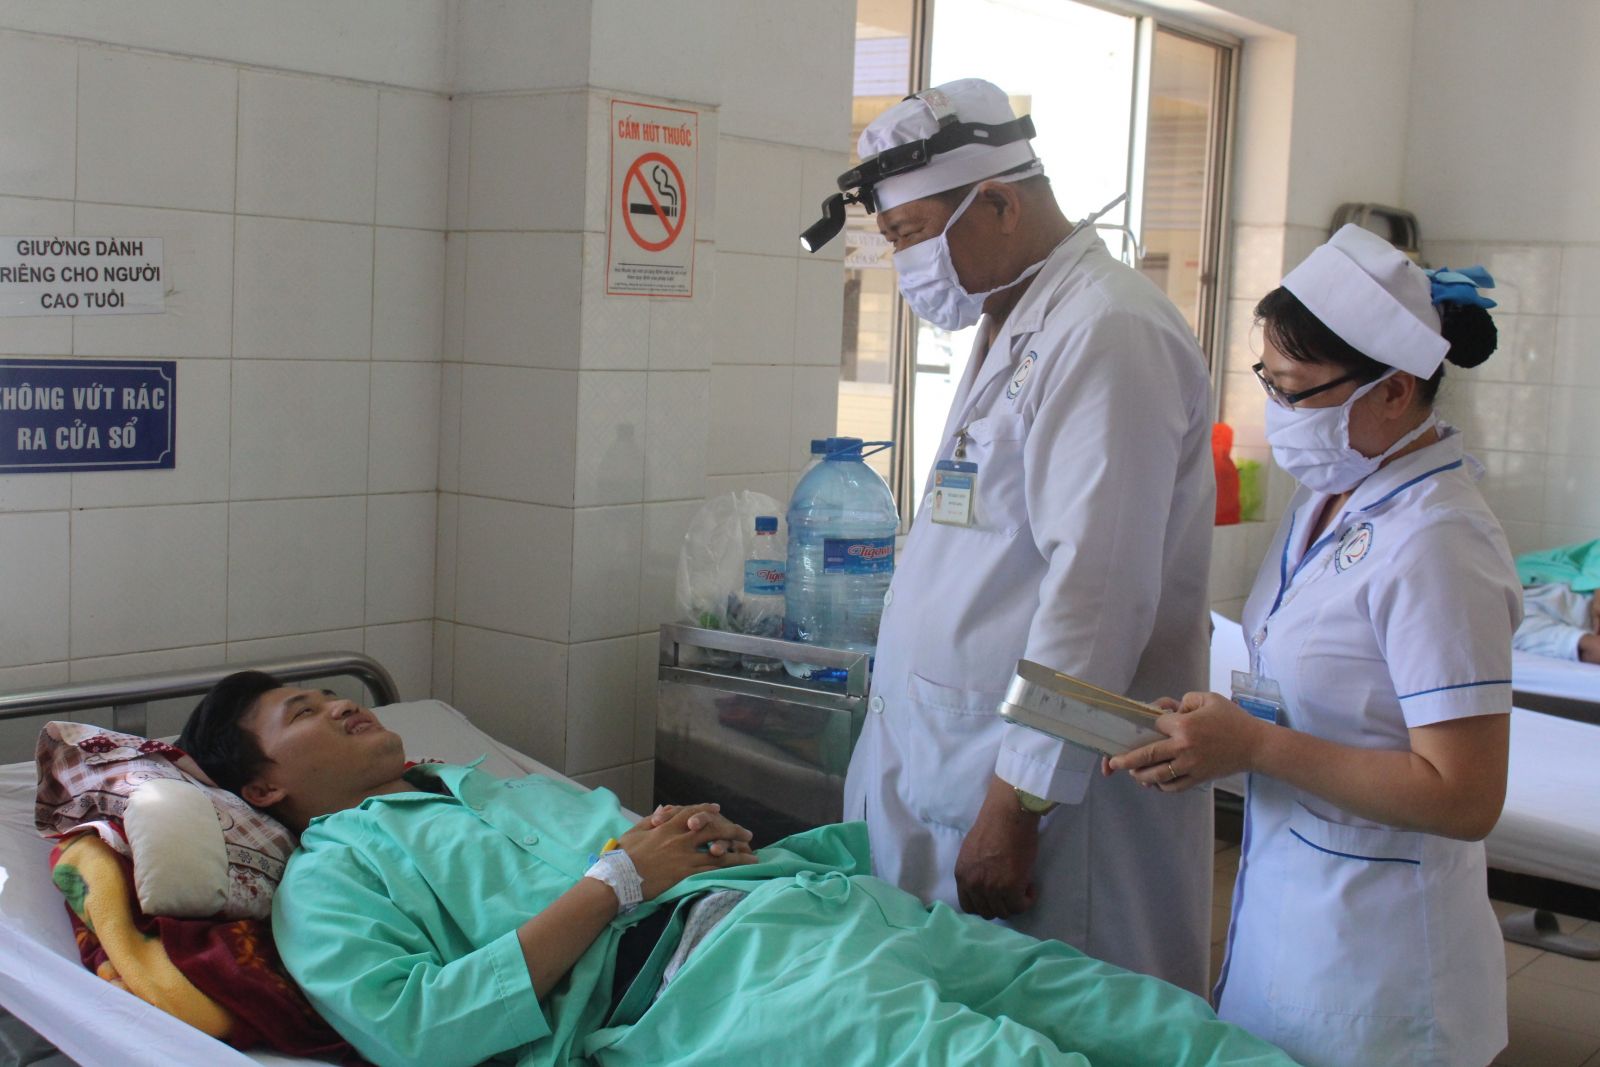 Bệnh viện tuyến trên hỗ trợ kỹ thuật và đào tạo nguồn nhân lực cho bác sĩ tỉnh Long An